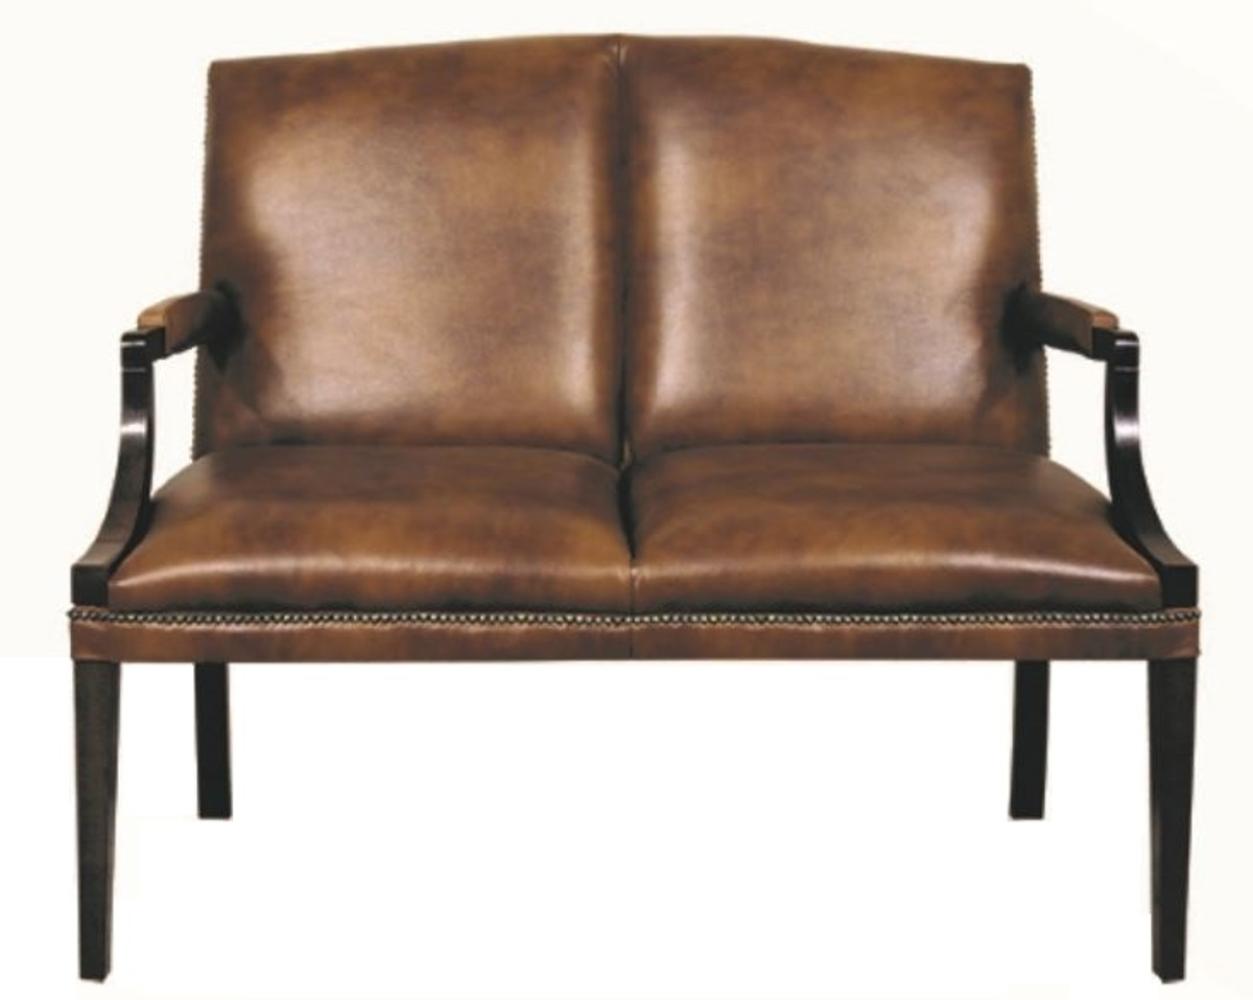 Casa Padrino 2er Sitzbank mit Armlehnen Braun / Schwarz 120 x 60 x H. 100 cm - Echtleder Möbel Bild 1